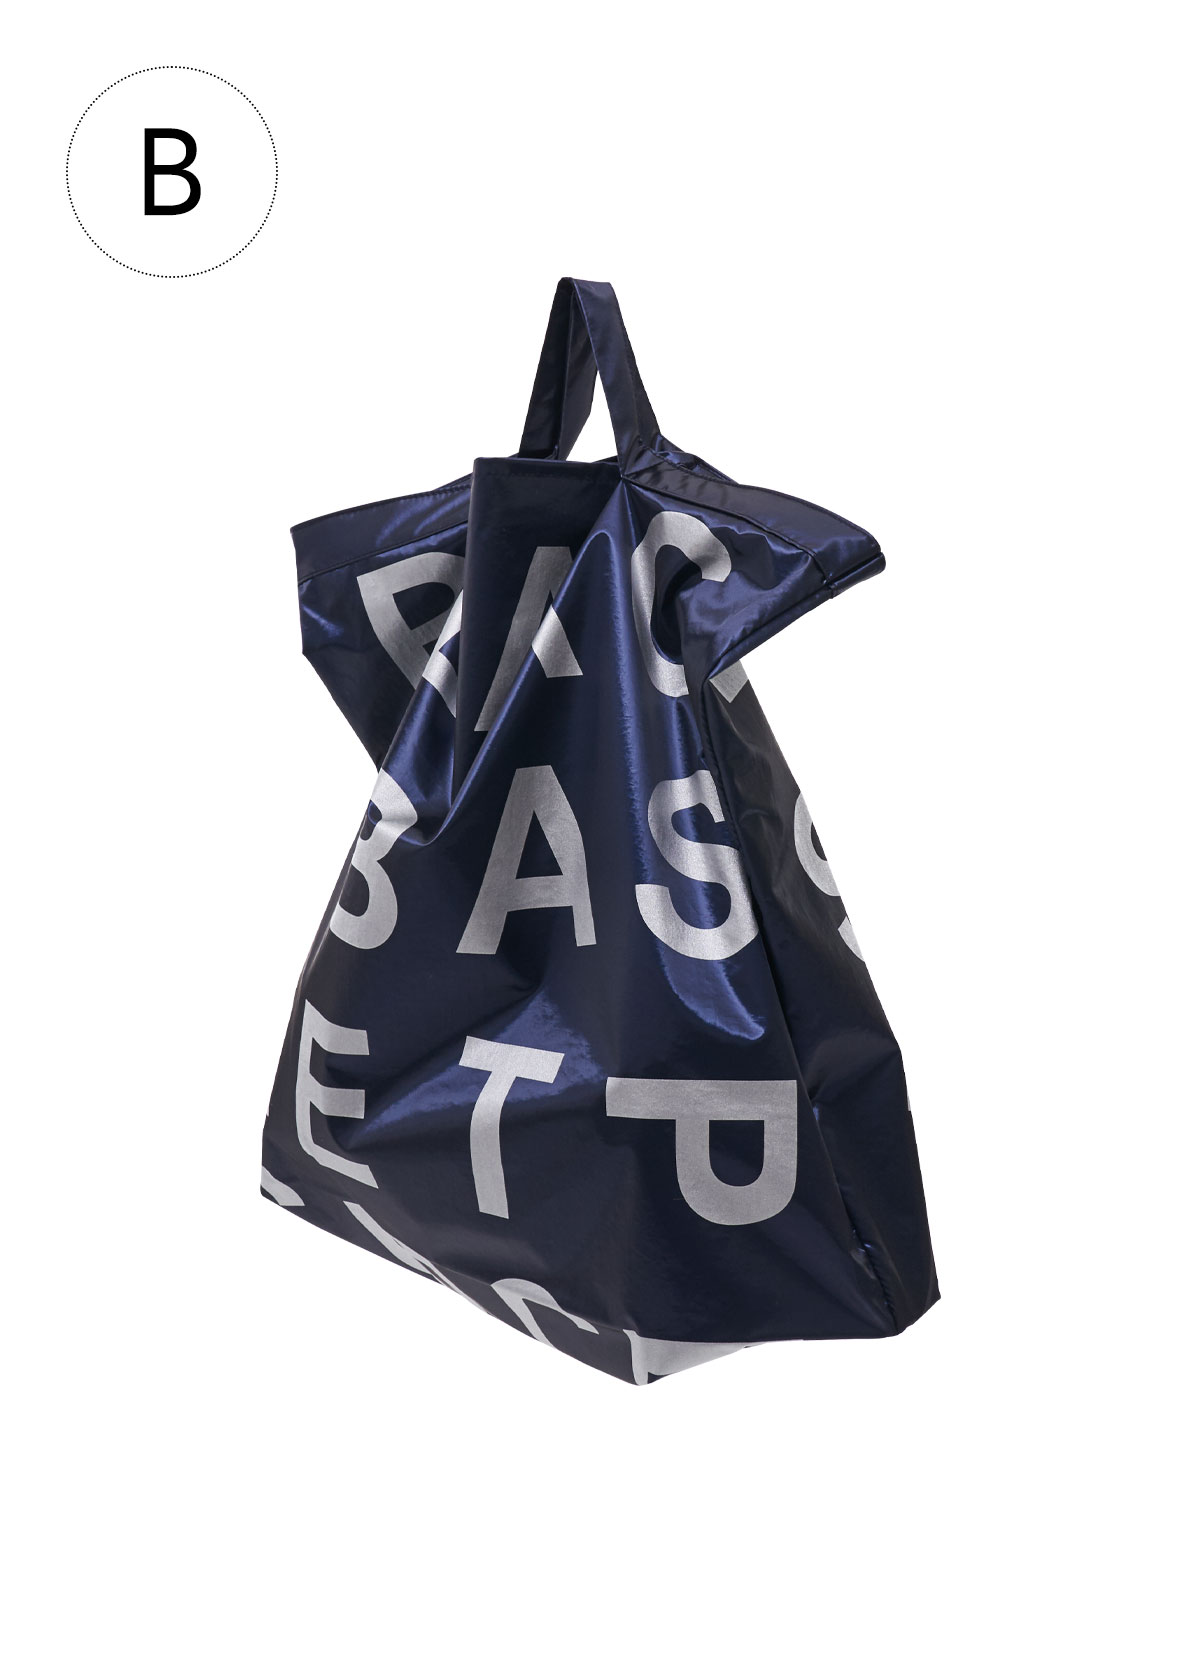 Ⓑ p.b satin bag (navy)